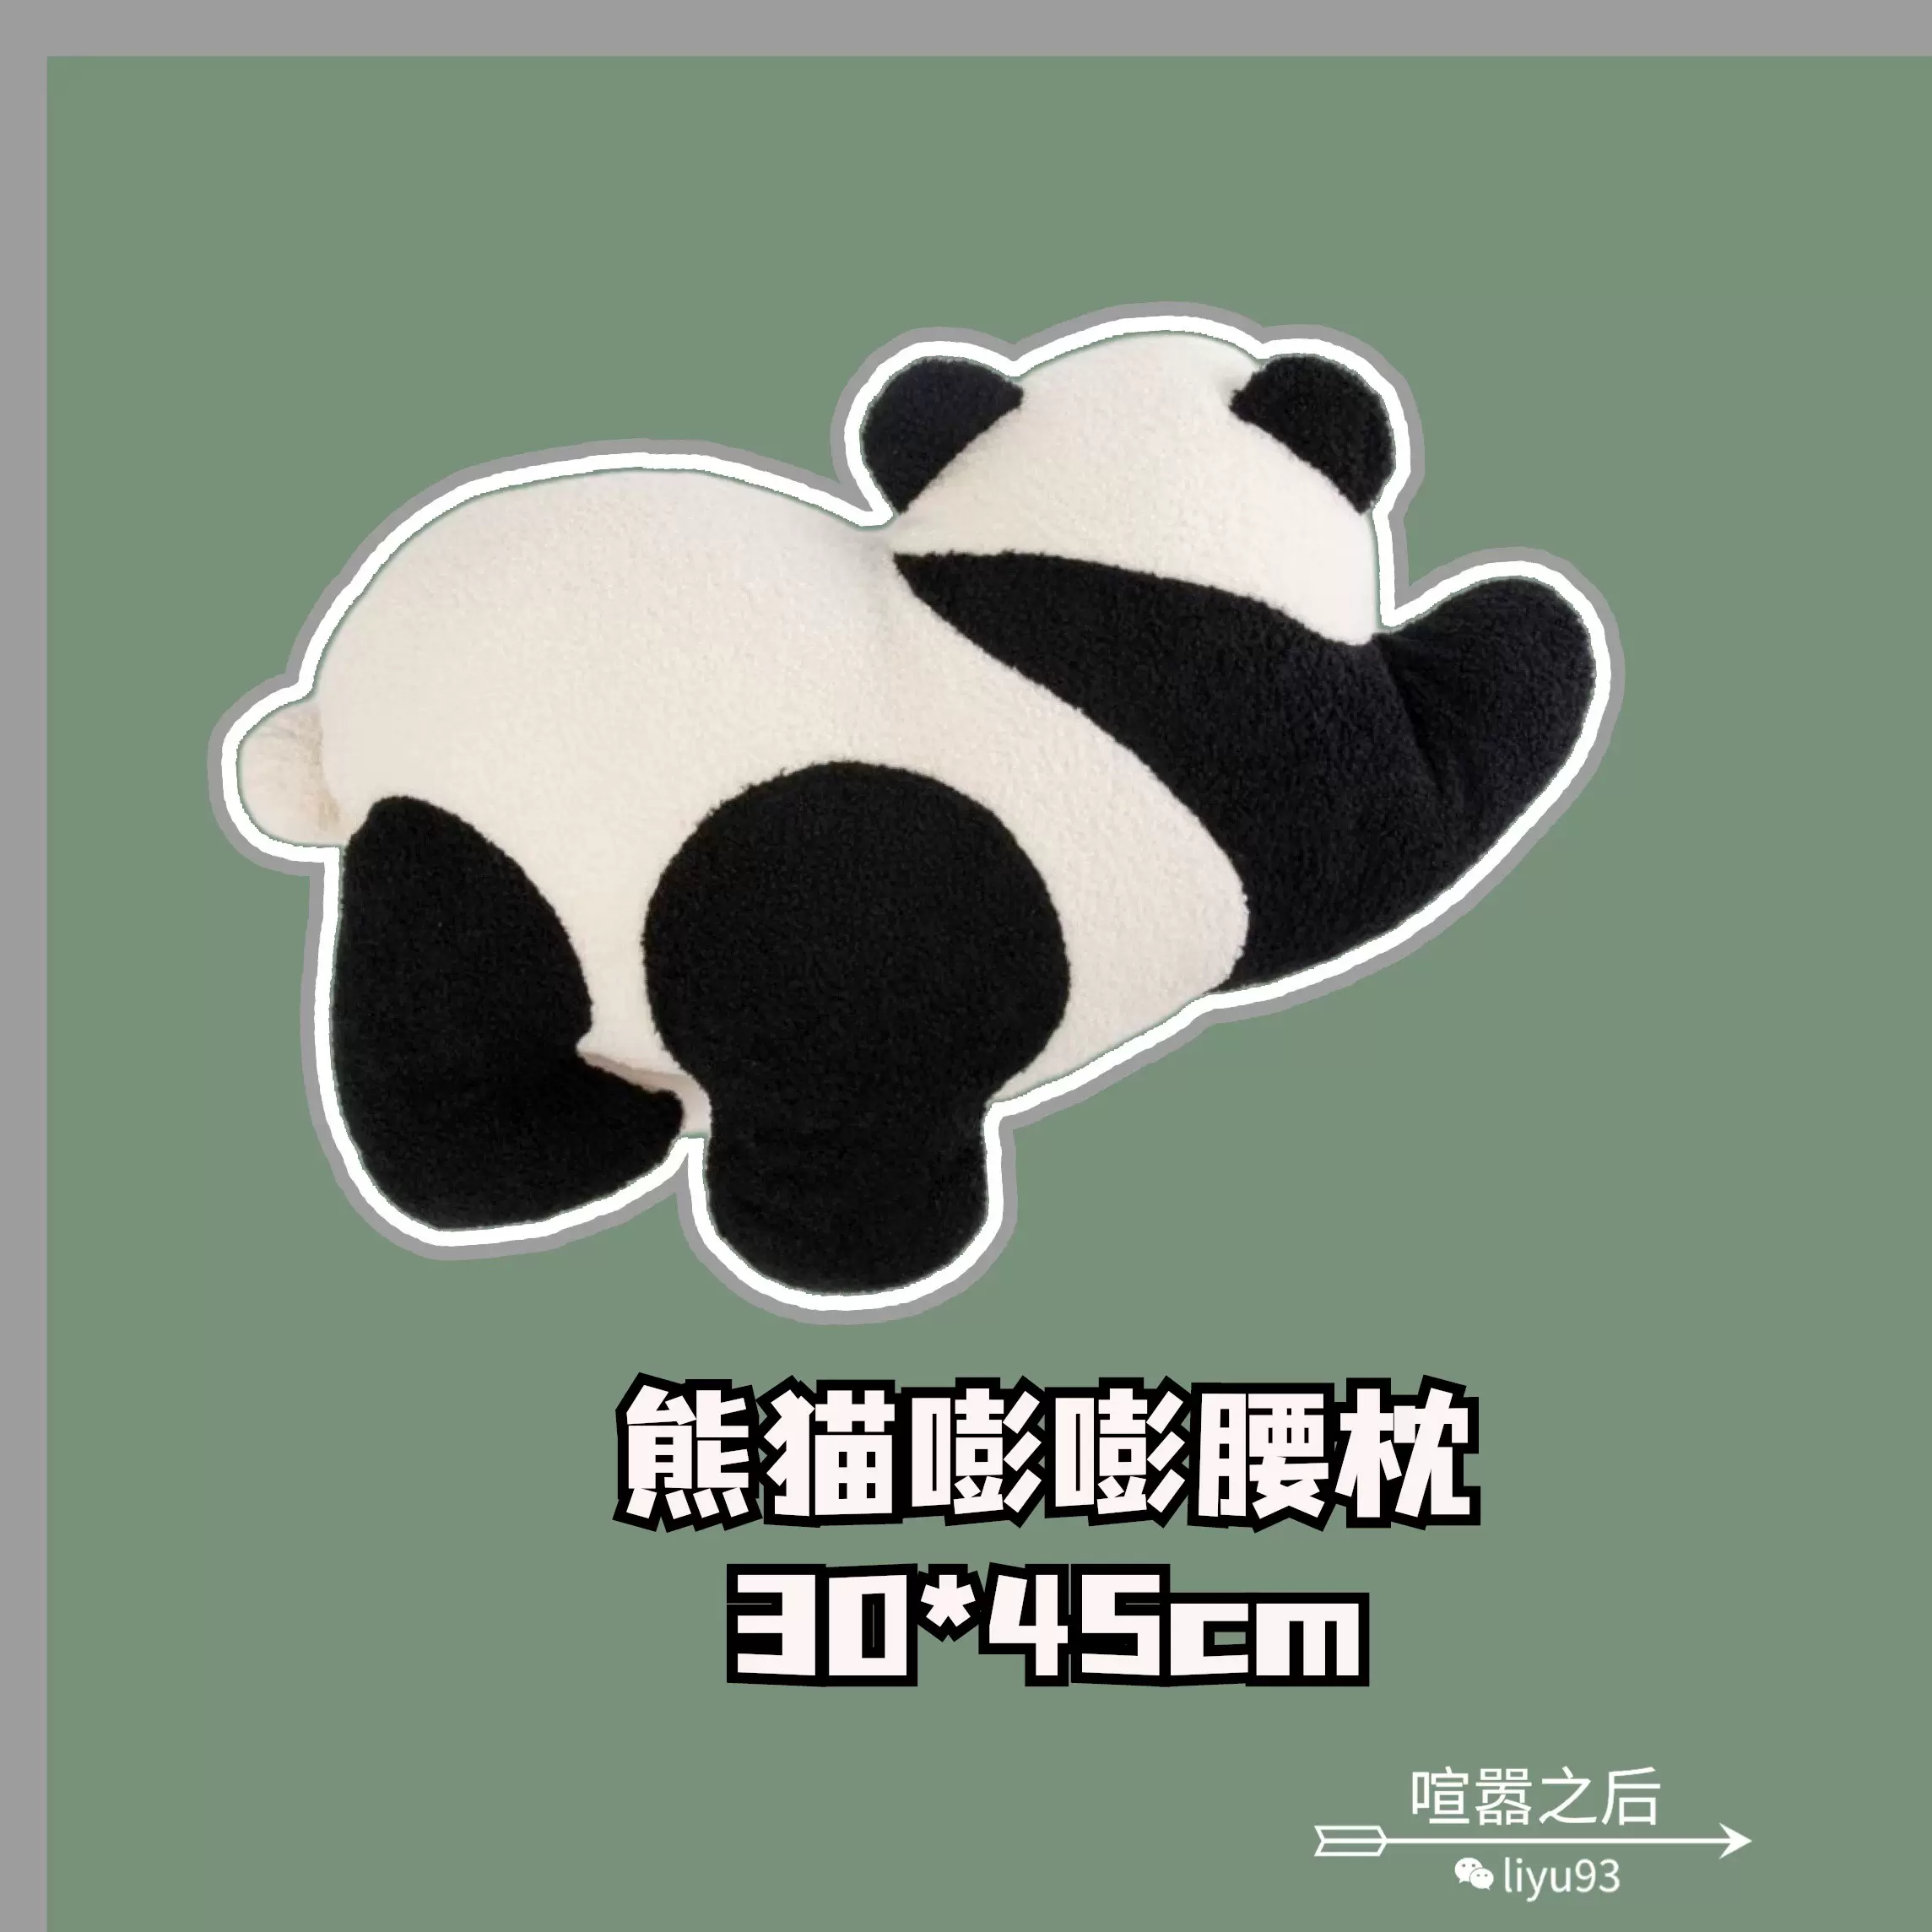 限时折扣】野兽派tbh家居熊猫嘭嘭腰枕靠垫小抱枕曲奇玛奇朵-Taobao 